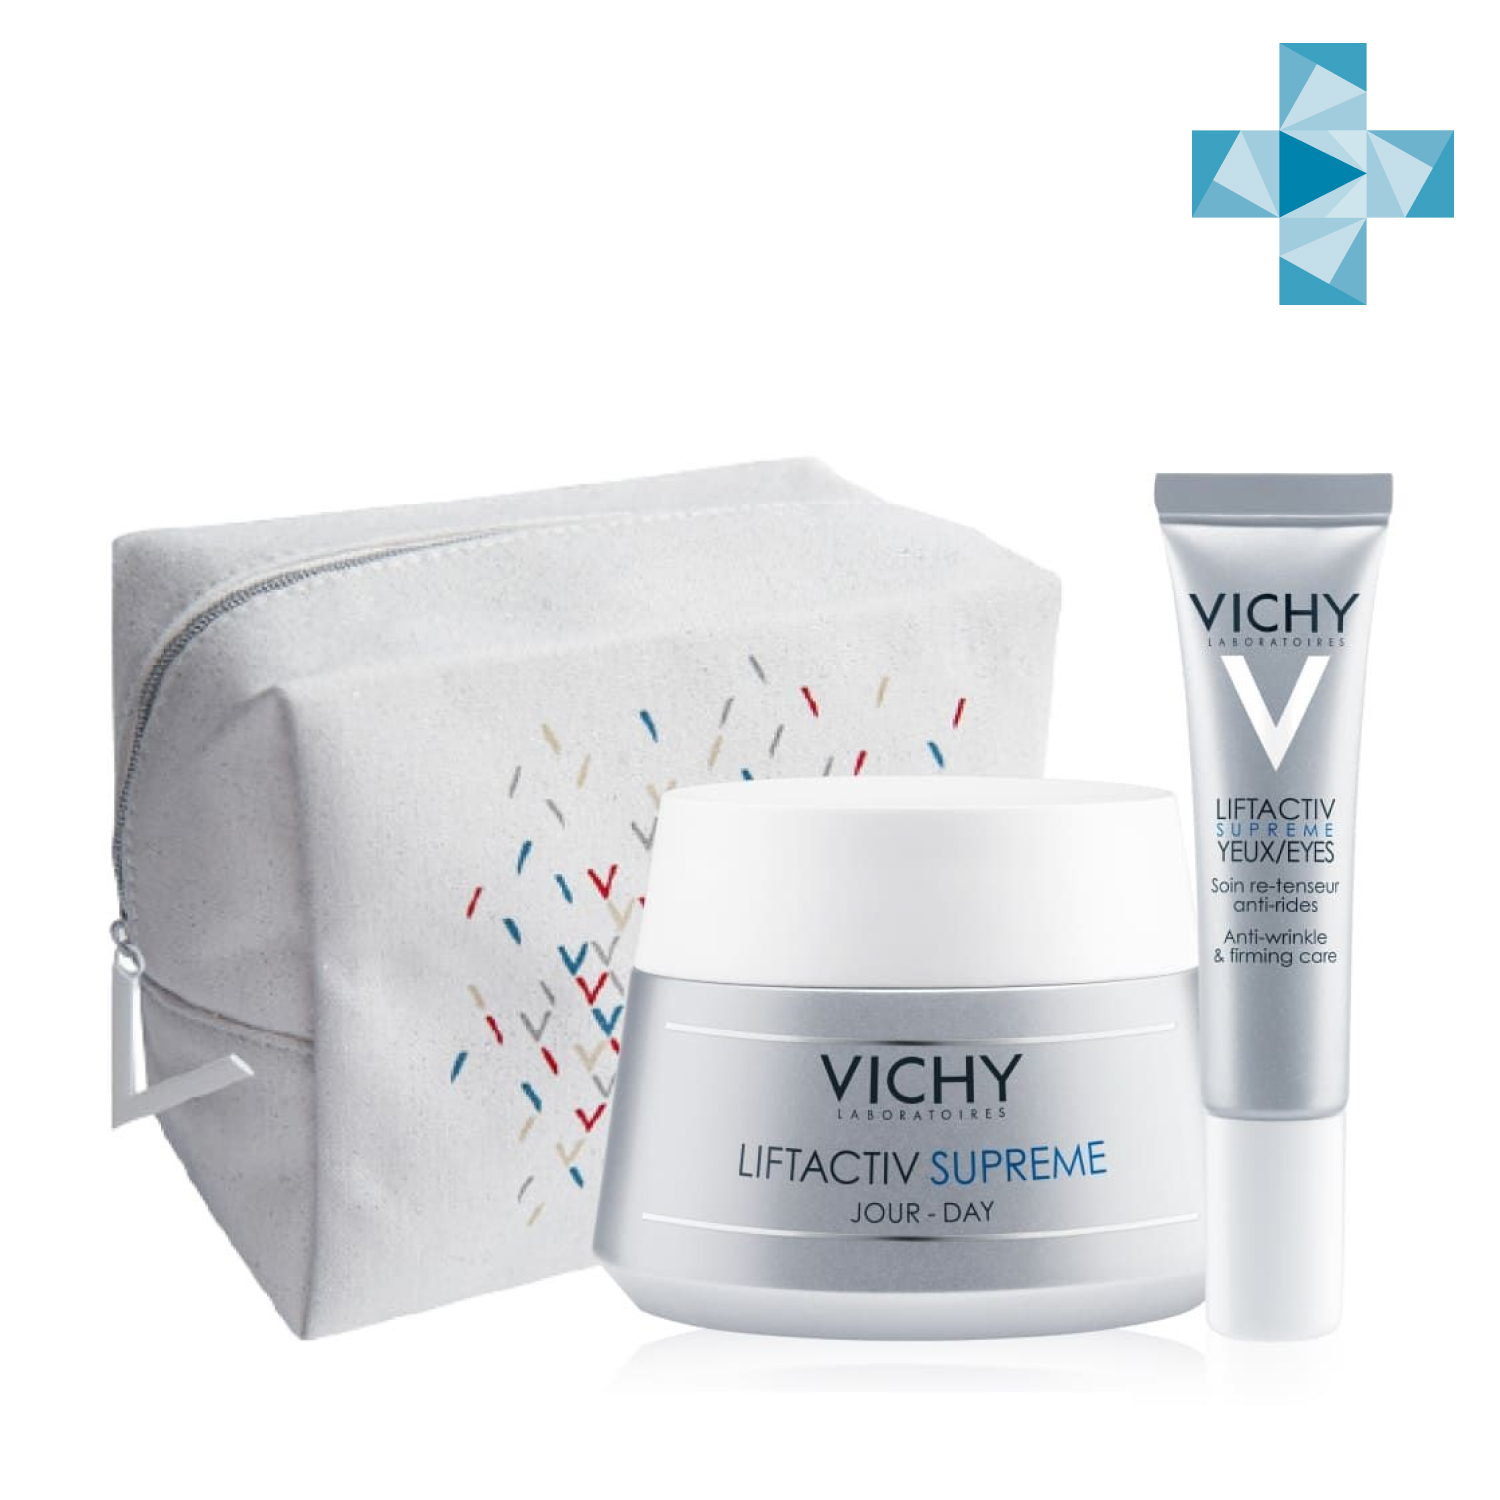 Купить Vichy Набор для упругости кожи (дерморесурс крем для контура глаз 15 мл + антивозрастной крем против морщин 50 мл) (Vichy, Liftactiv), Франция